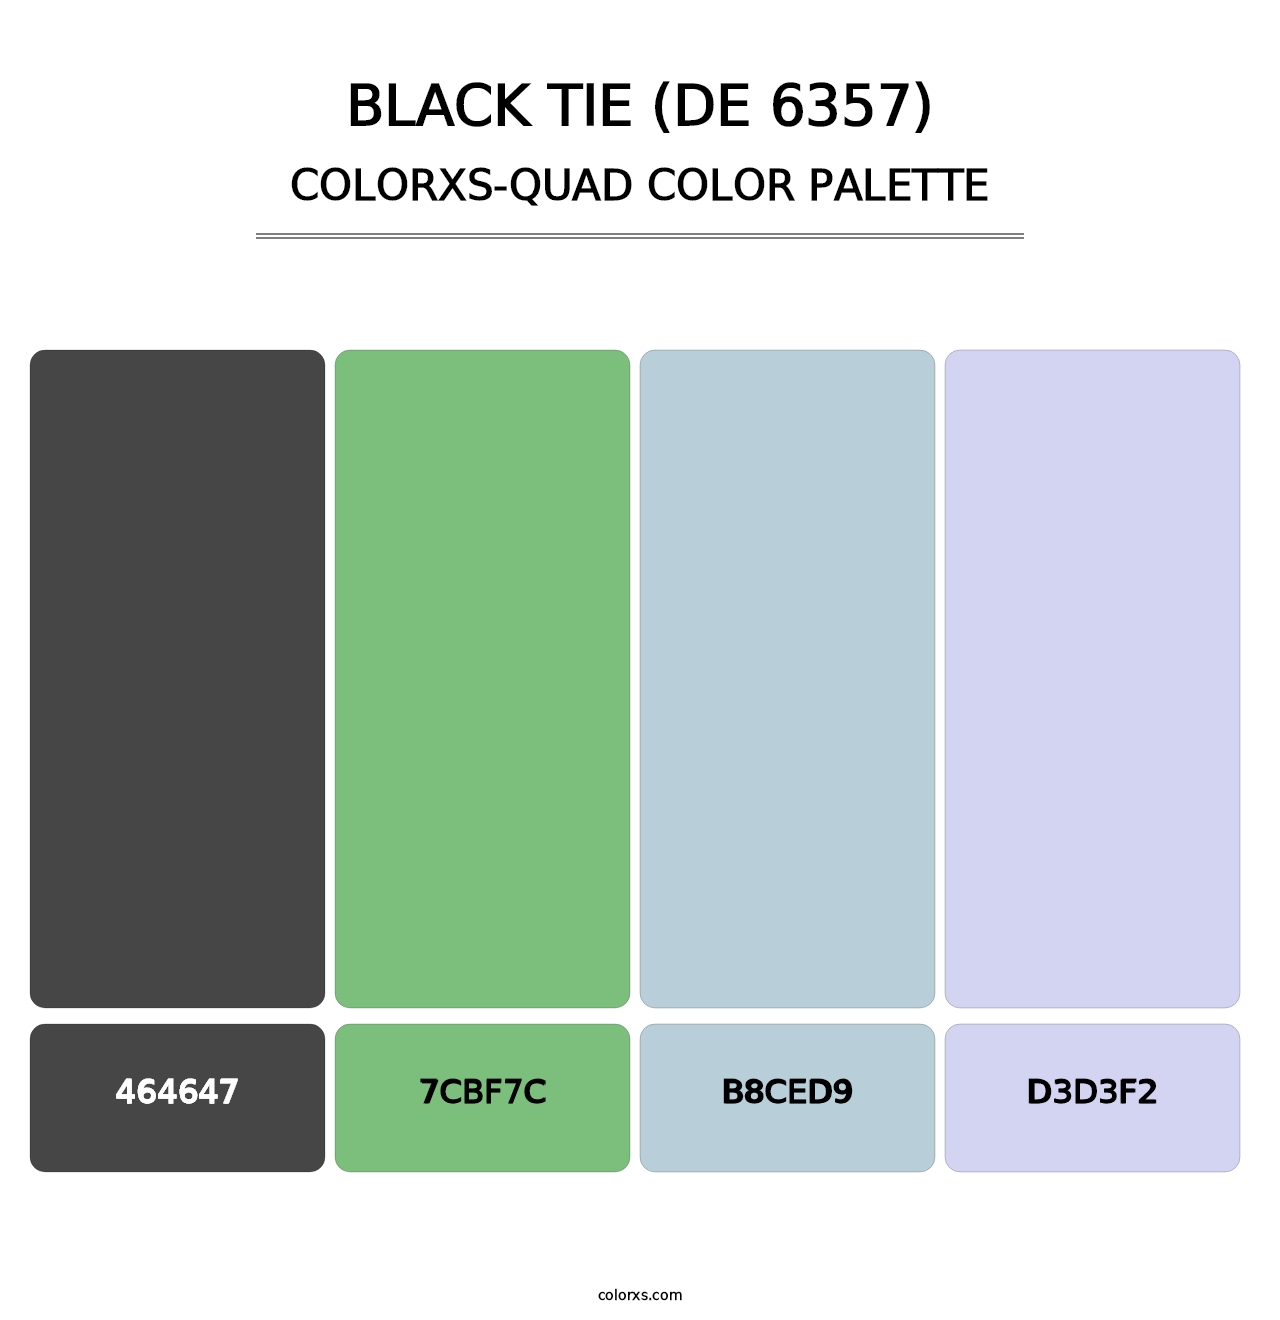 Black Tie (DE 6357) - Colorxs Quad Palette